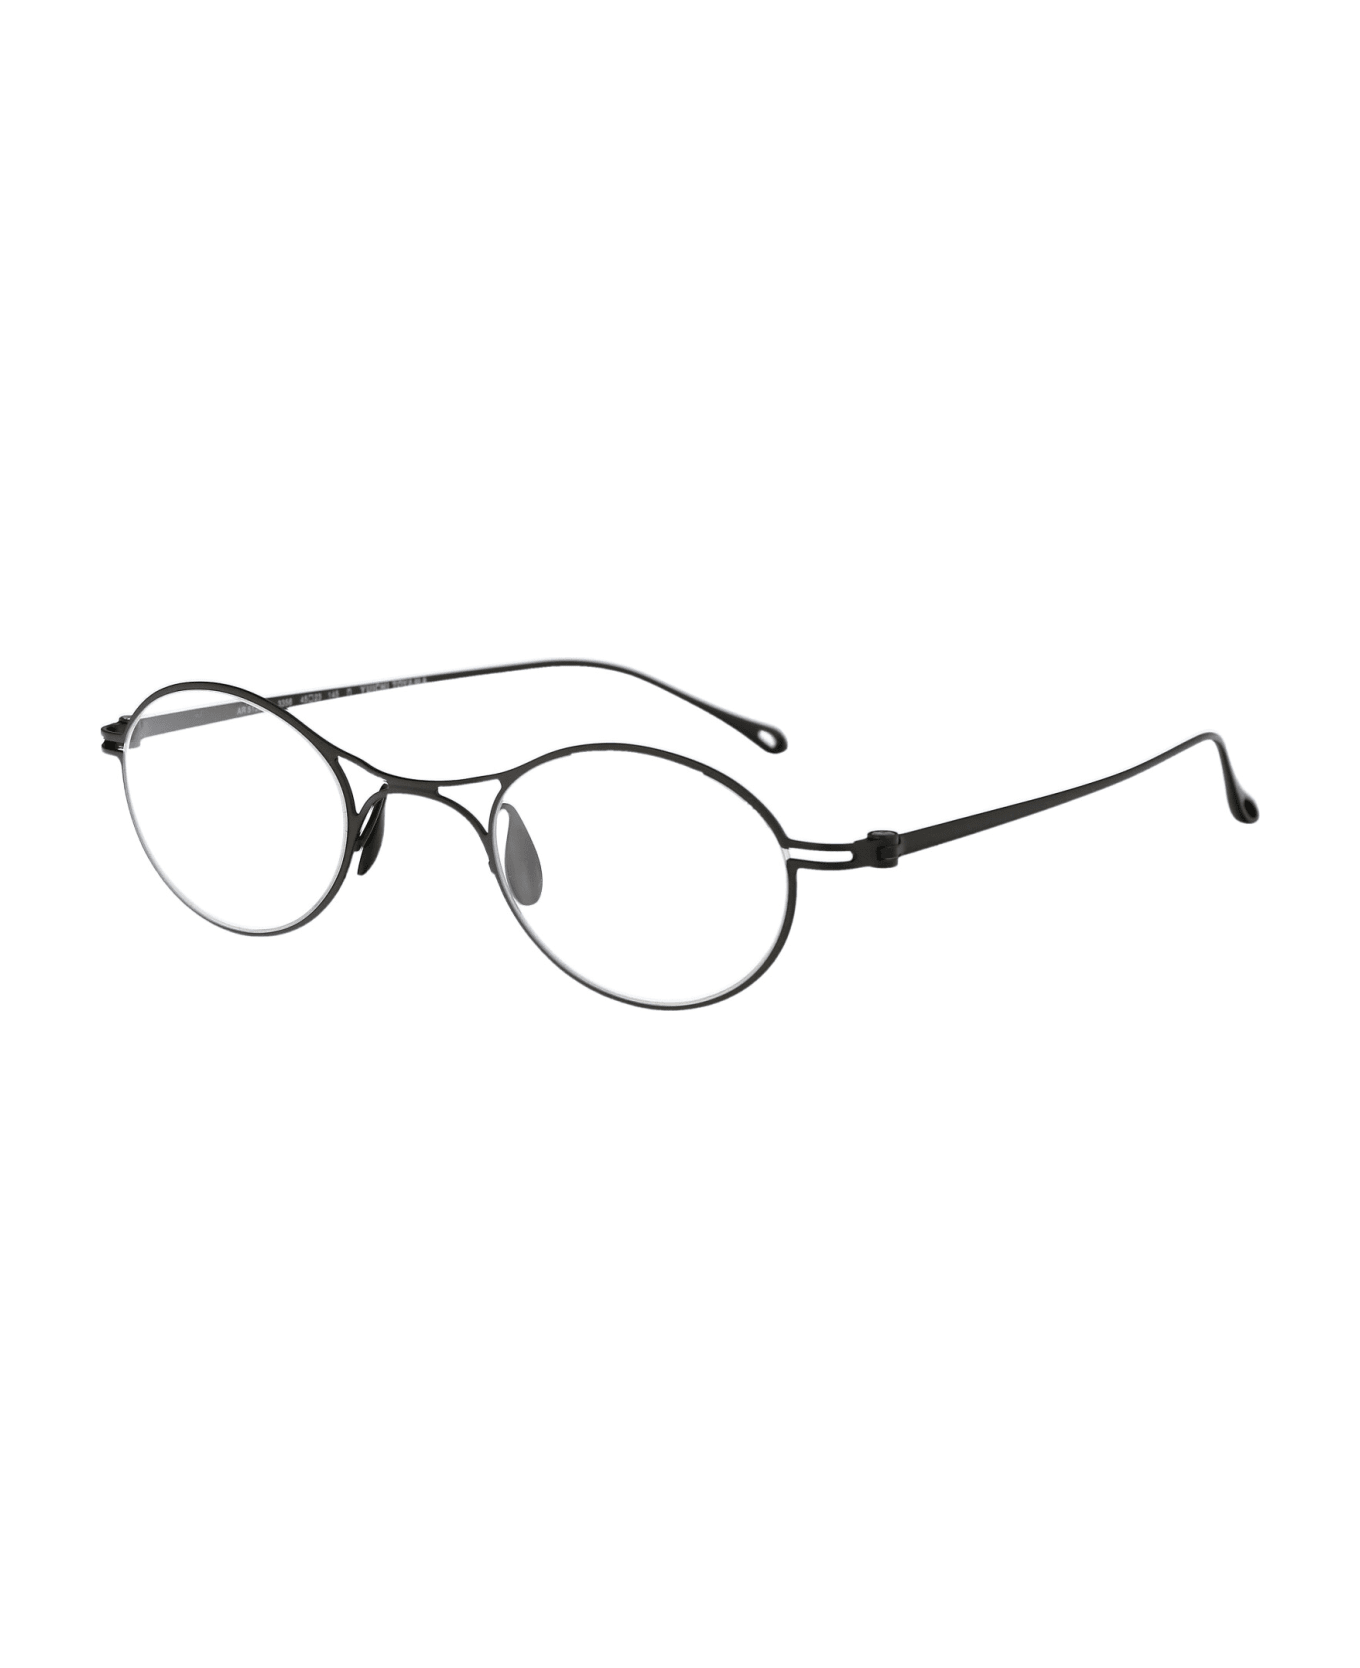 Giorgio Armani 0ar5135t Glasses - 3356 Matte Gunmetal